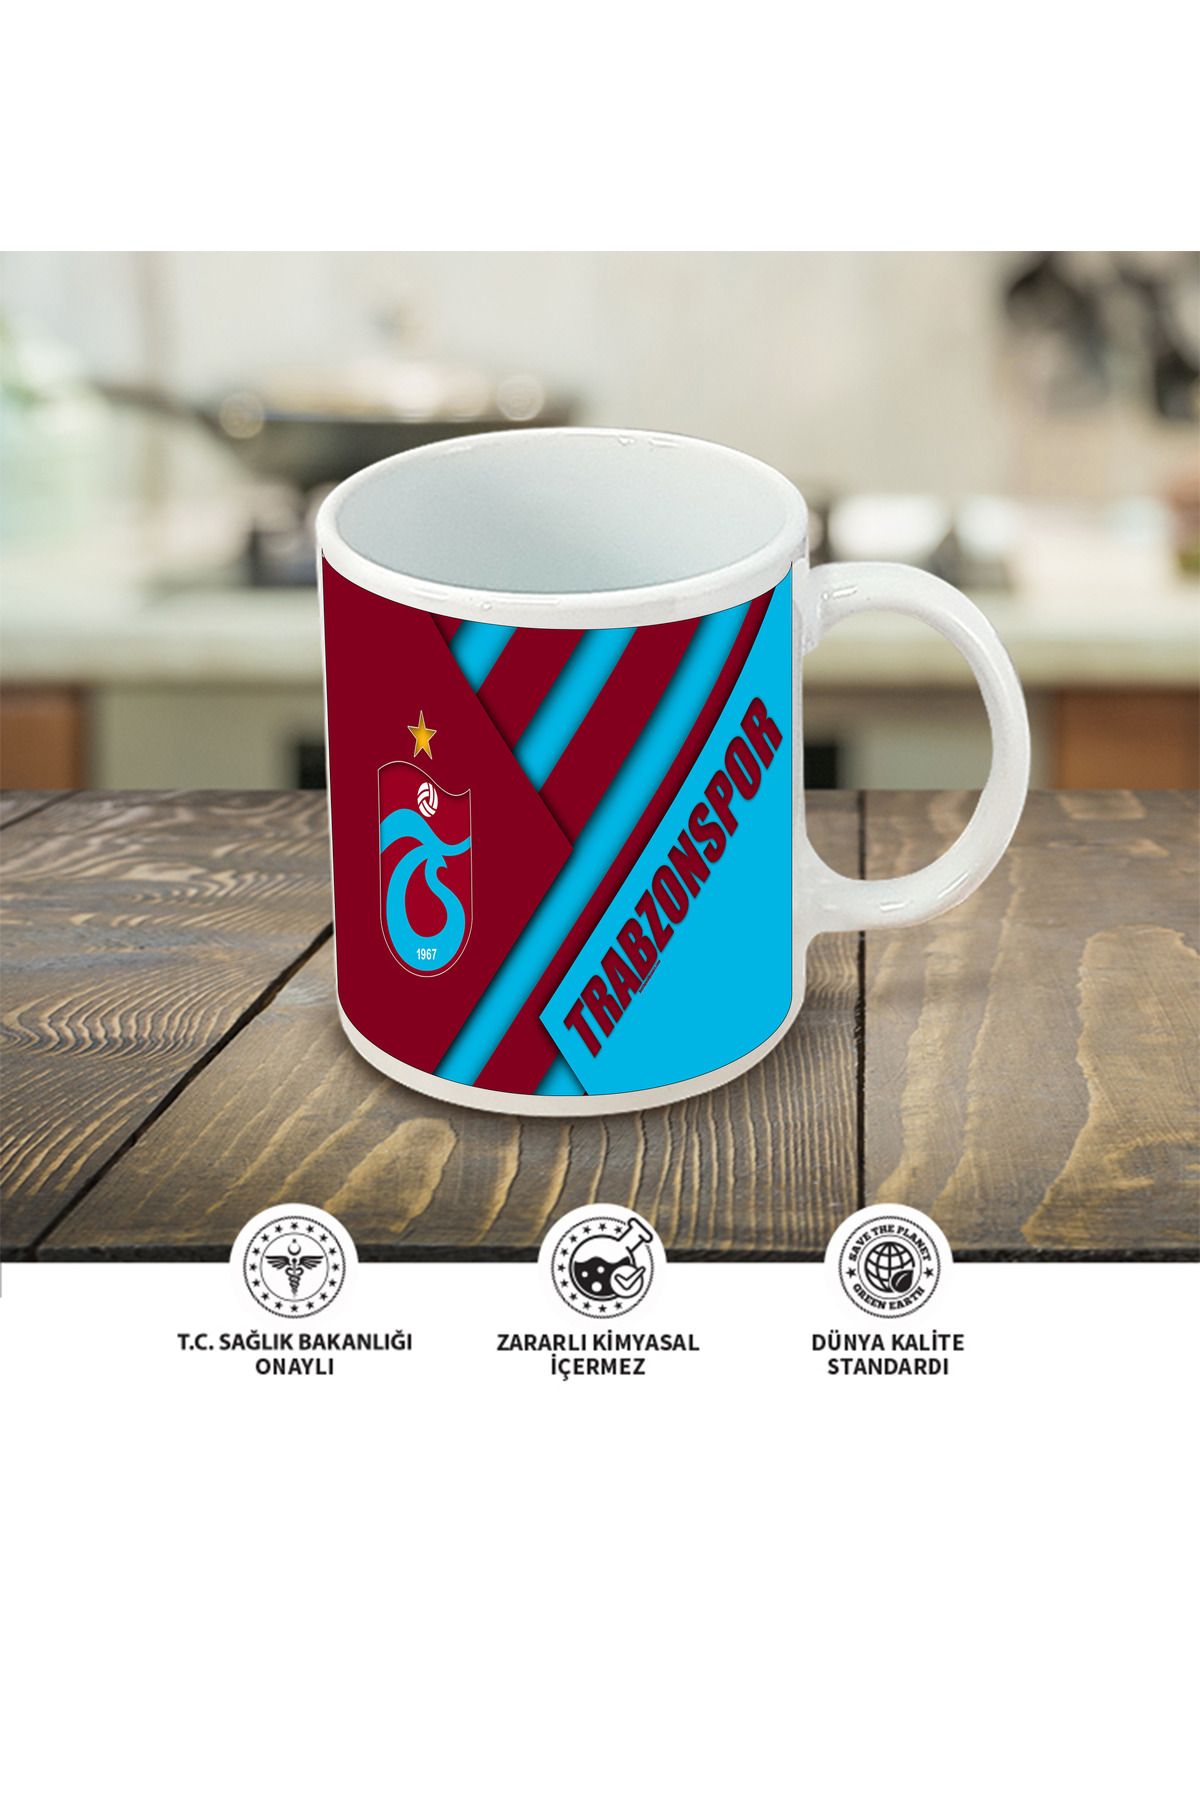 Atölyehane Trabzonspor tasarımlı içi ve kulbu renkli porselen kupa bardak